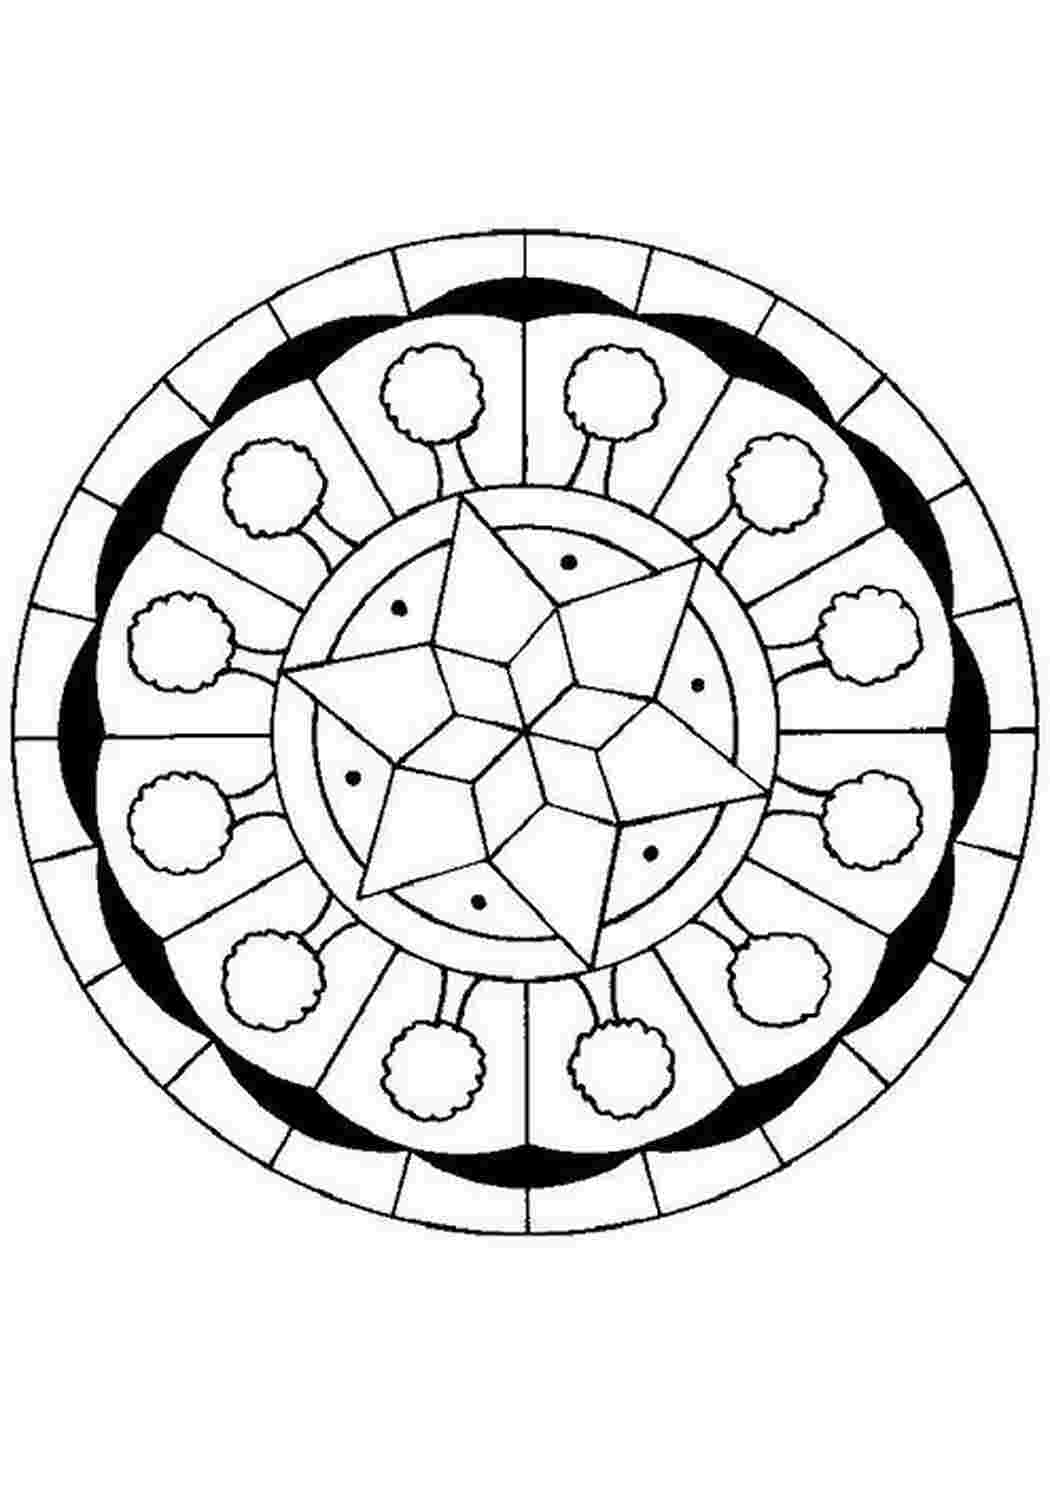 Тарелка с геометрическим орнаментом для раскрашивания